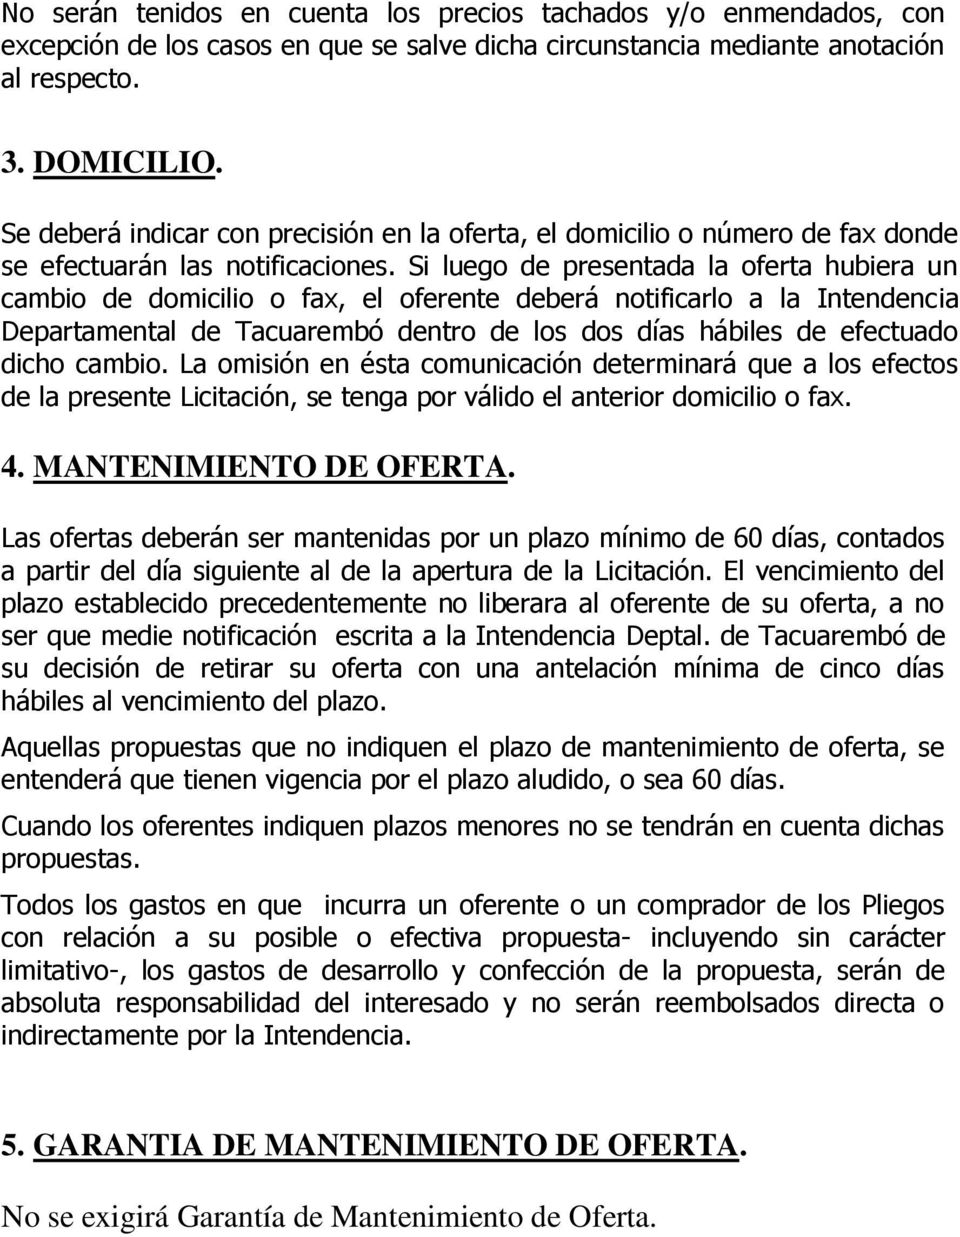 Si luego de presentada la oferta hubiera un cambio de domicilio o fax, el oferente deberá notificarlo a la Intendencia Departamental de Tacuarembó dentro de los dos días hábiles de efectuado dicho